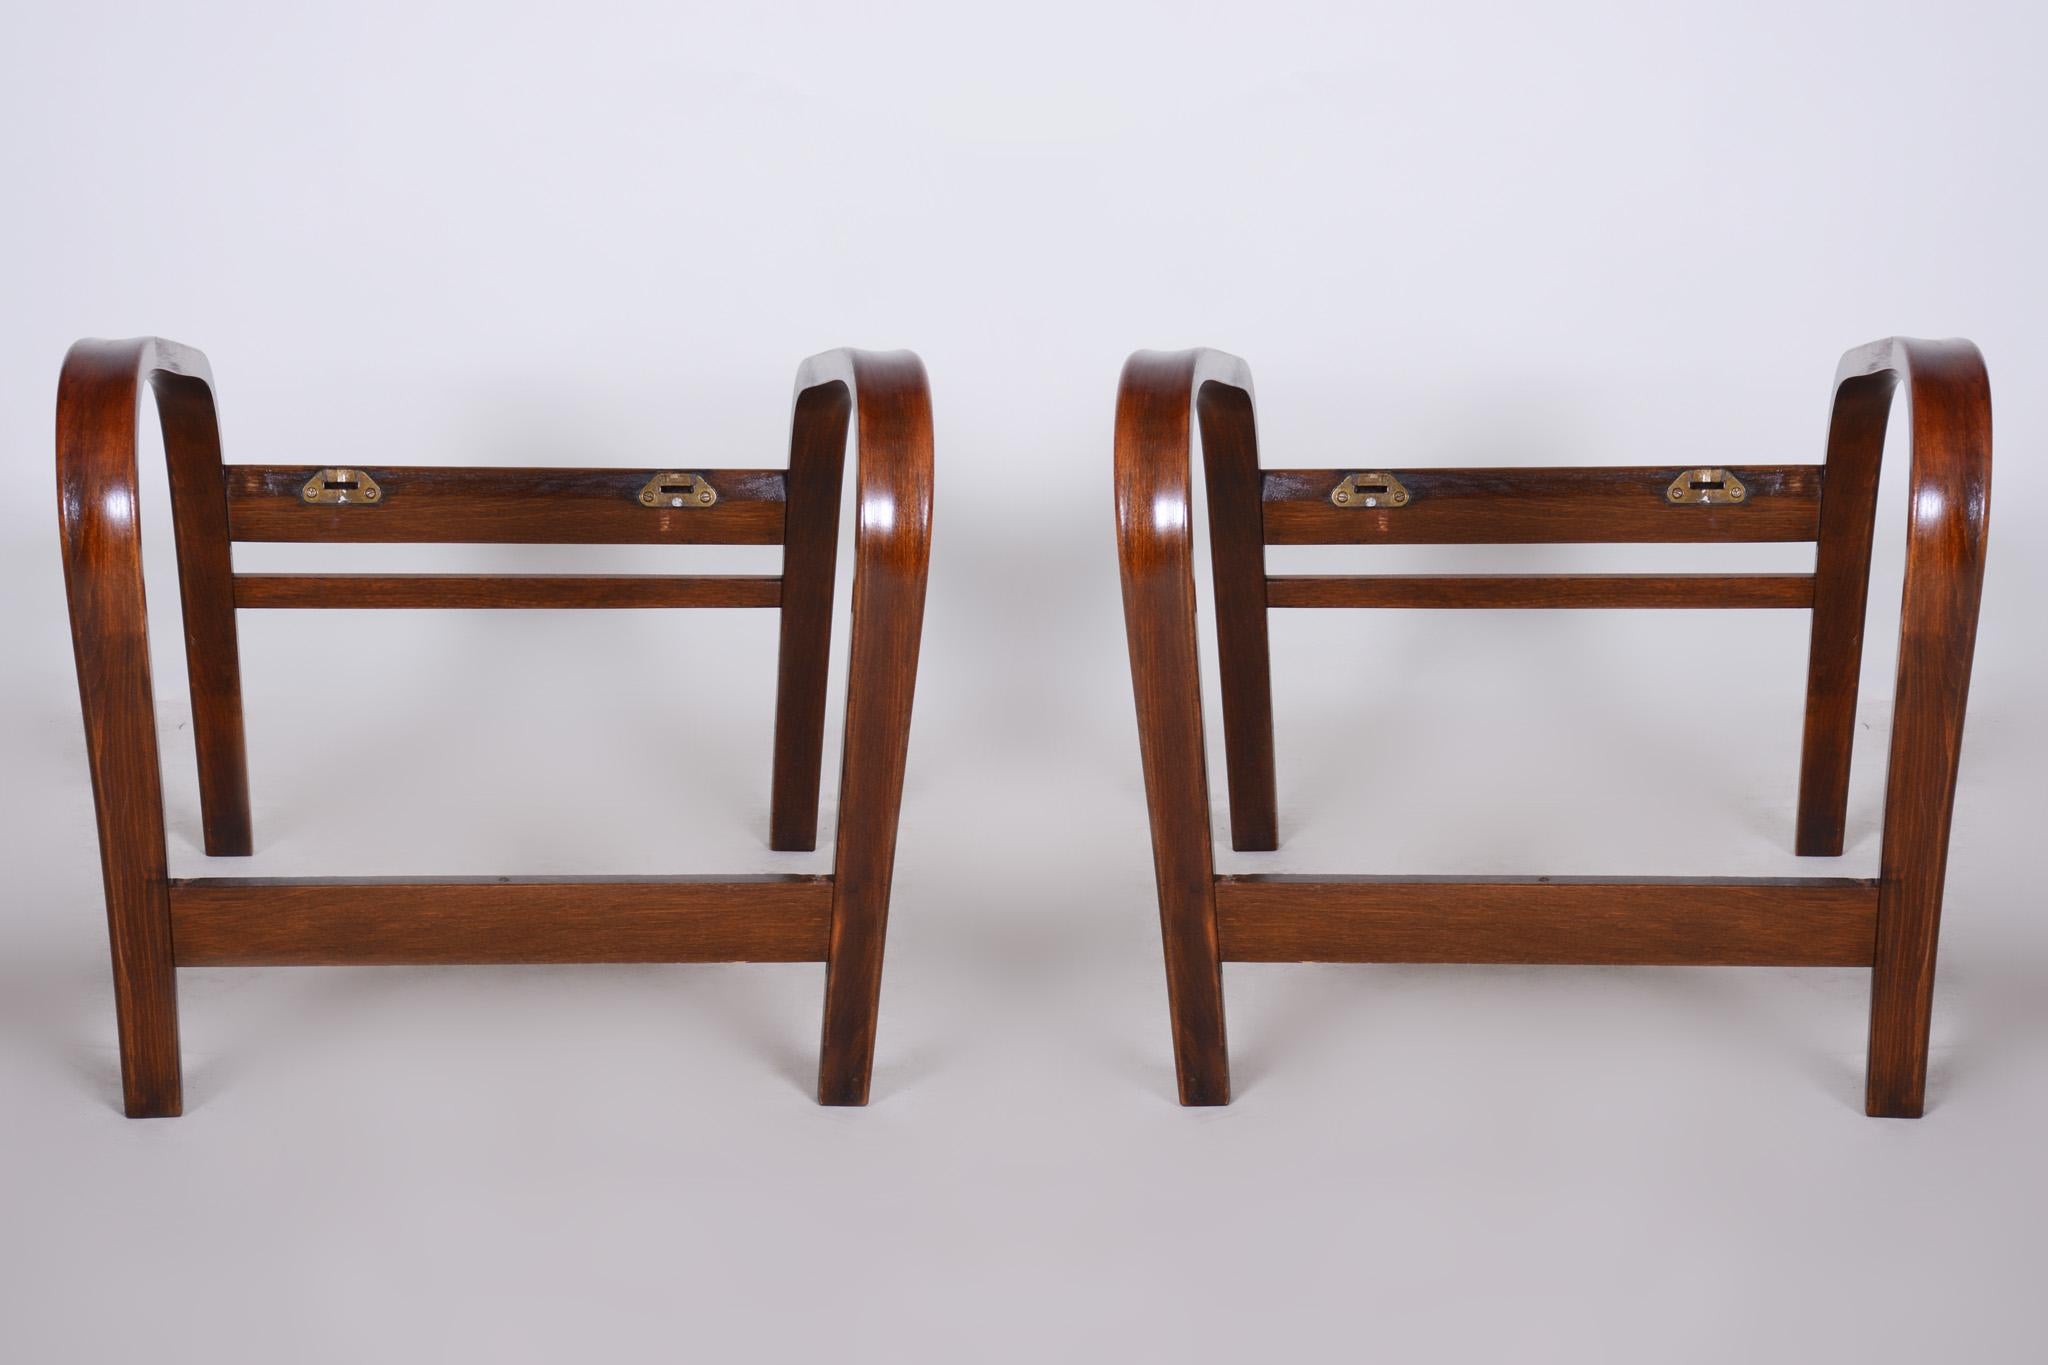 Fauteuils Art Déco en hêtre, entièrement restaurés par notre équipe.

Concepteurs : Kozelka et Kropacek

Ces fauteuils ont été conçus par le duo d'architectes Koželka - Kropácek en collaboration avec Jindrich Halaba (UP Zavody) et inspirés de